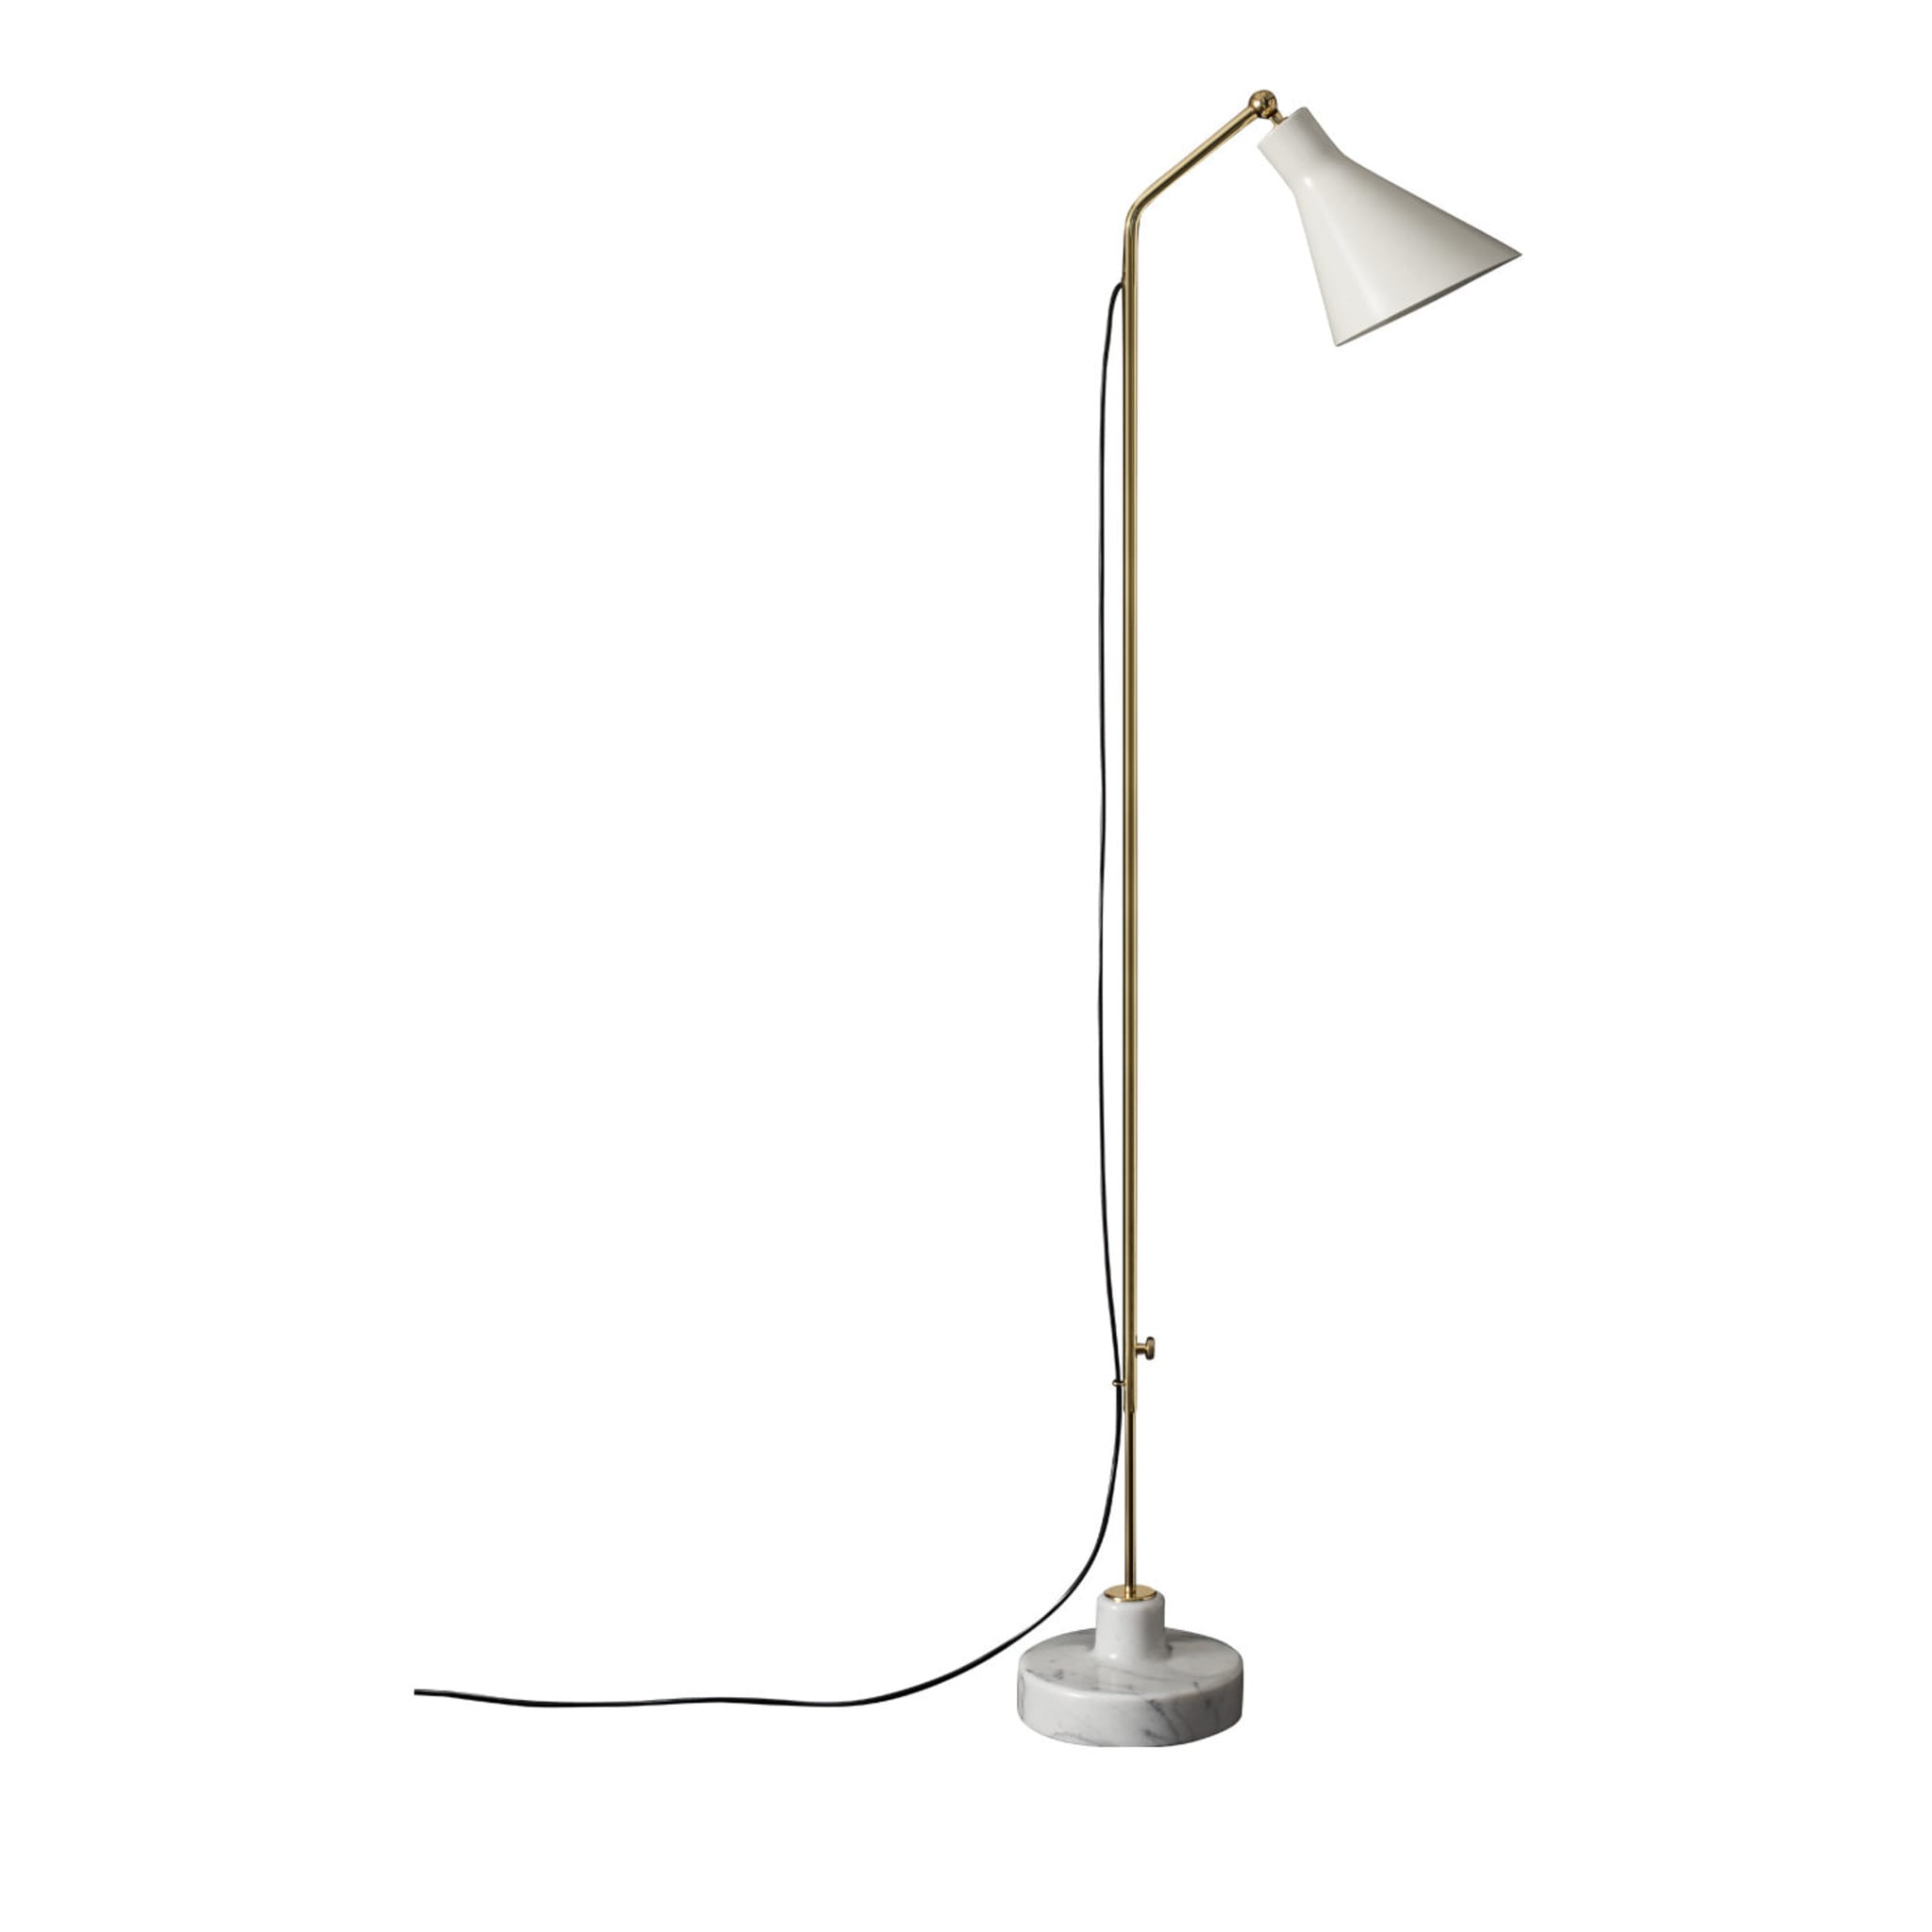 Alzabile Adjustable Lamp by Ignazio Gardella - Alternative view 1